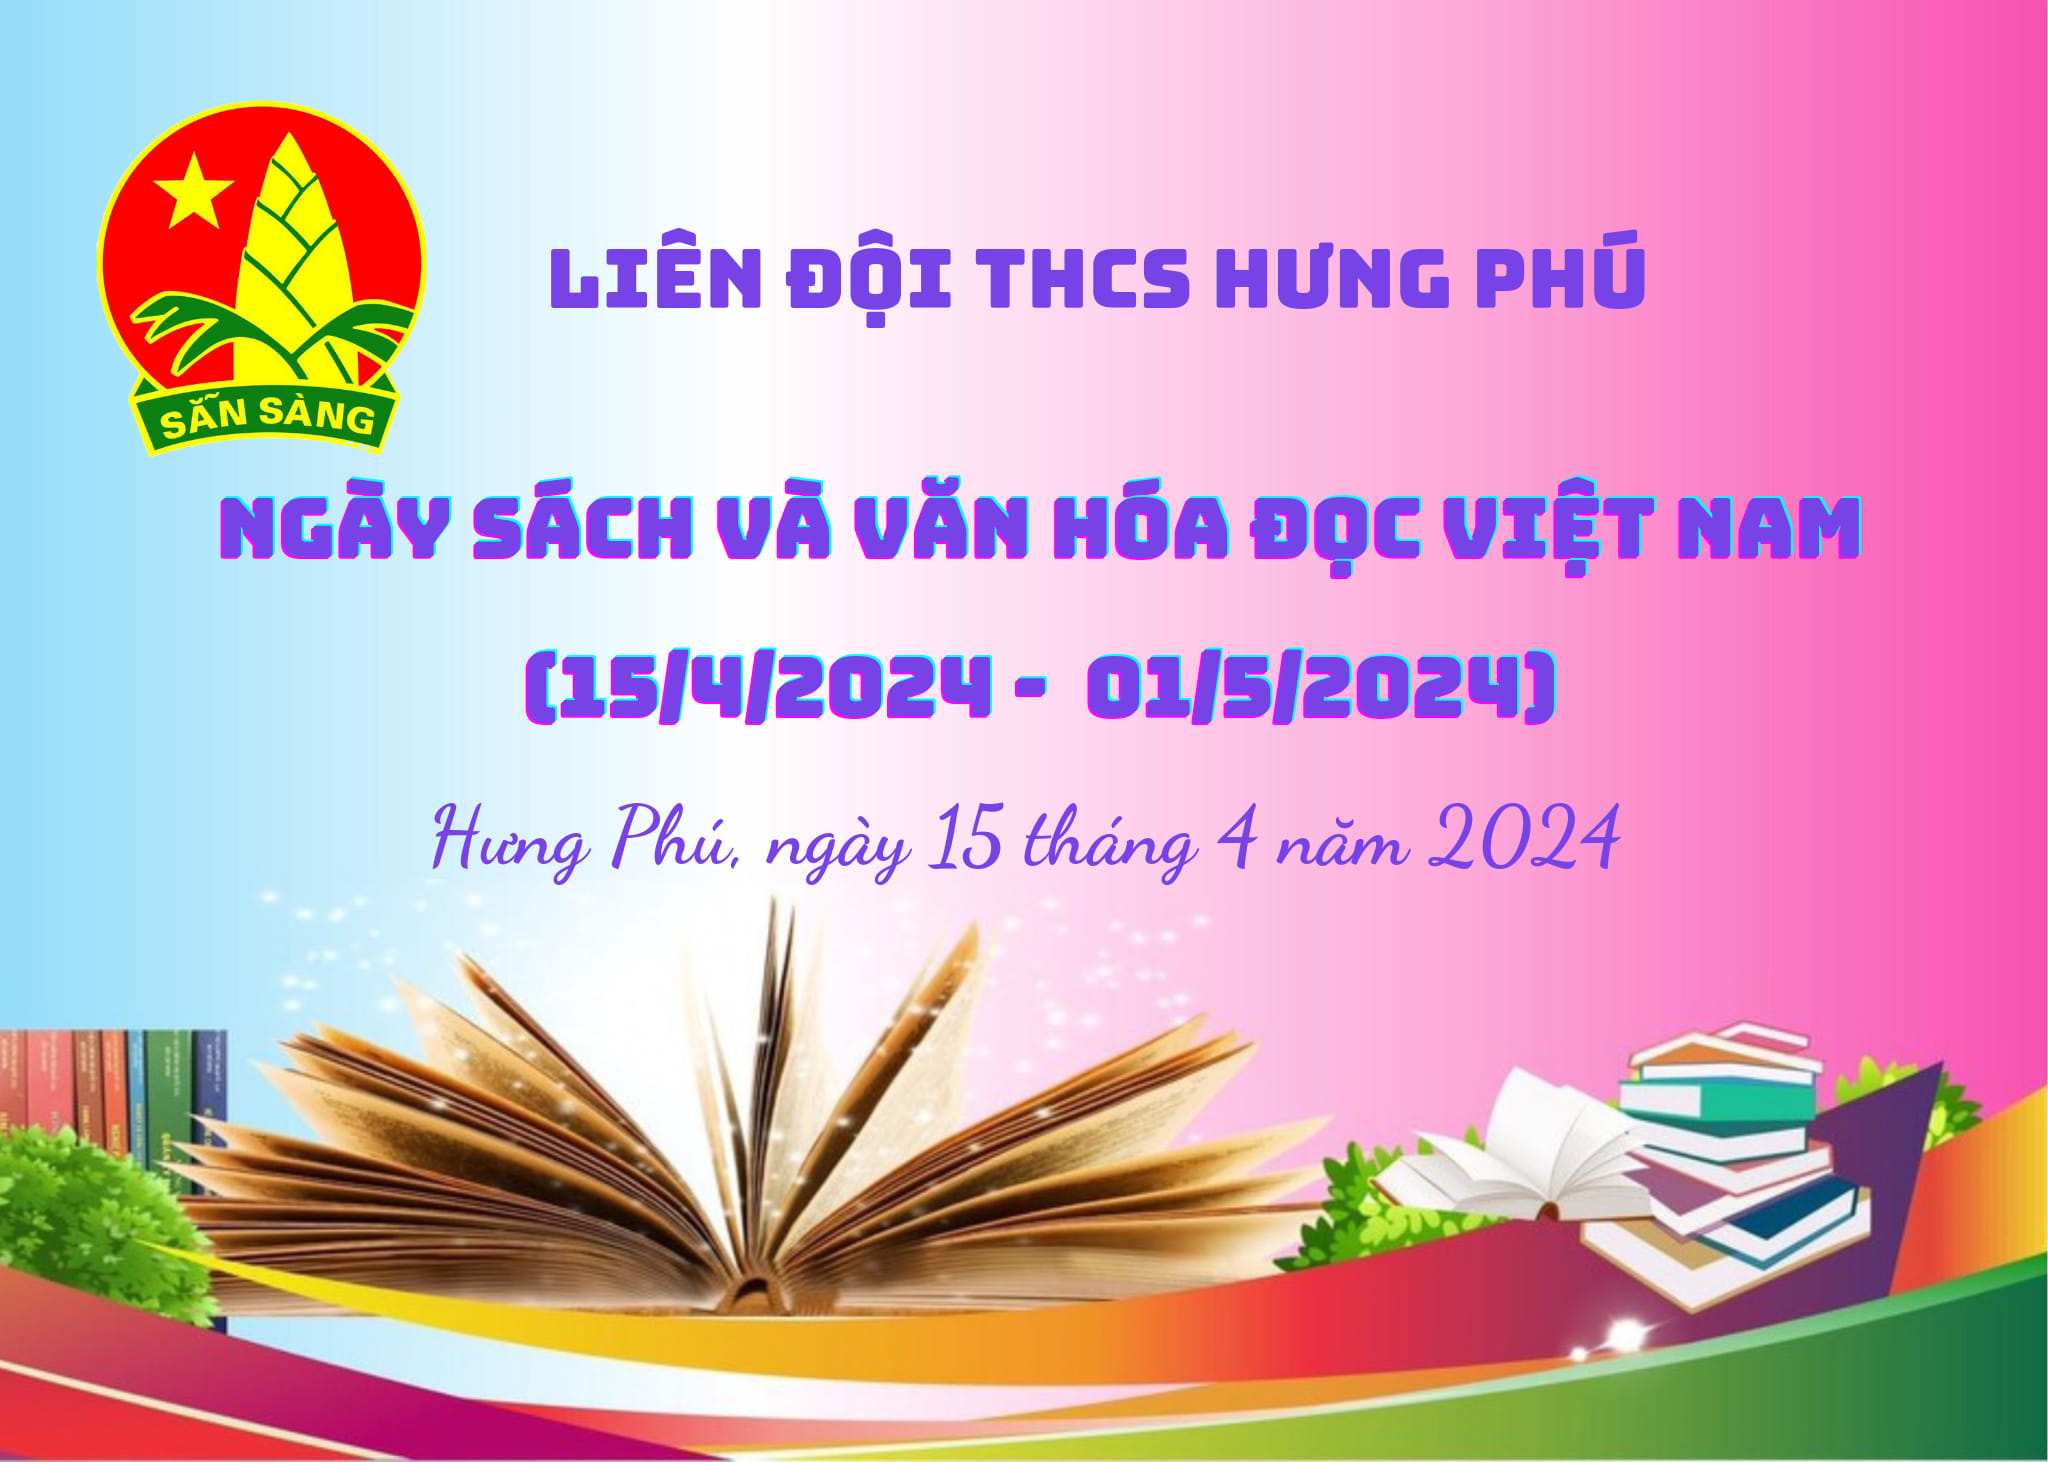 Hưởng ứng Ngày Sách và Văn hoá đọc Việt Nam năm 2024 - Ngày Hội Đọc Sách tại Liên đội THCS Hưng Phú